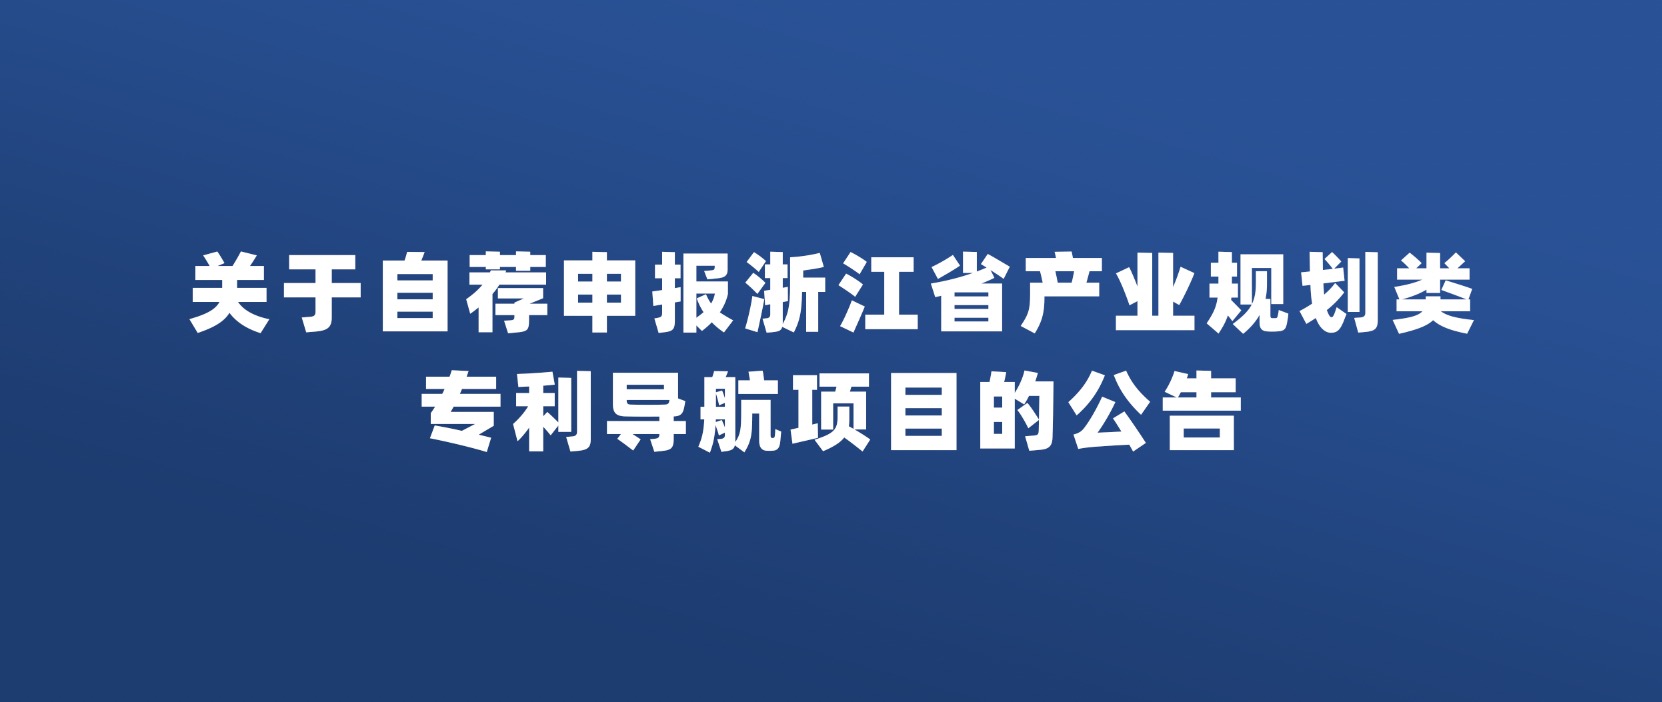 关于自荐申报浙江省产业规划类 专利导航项目的公告